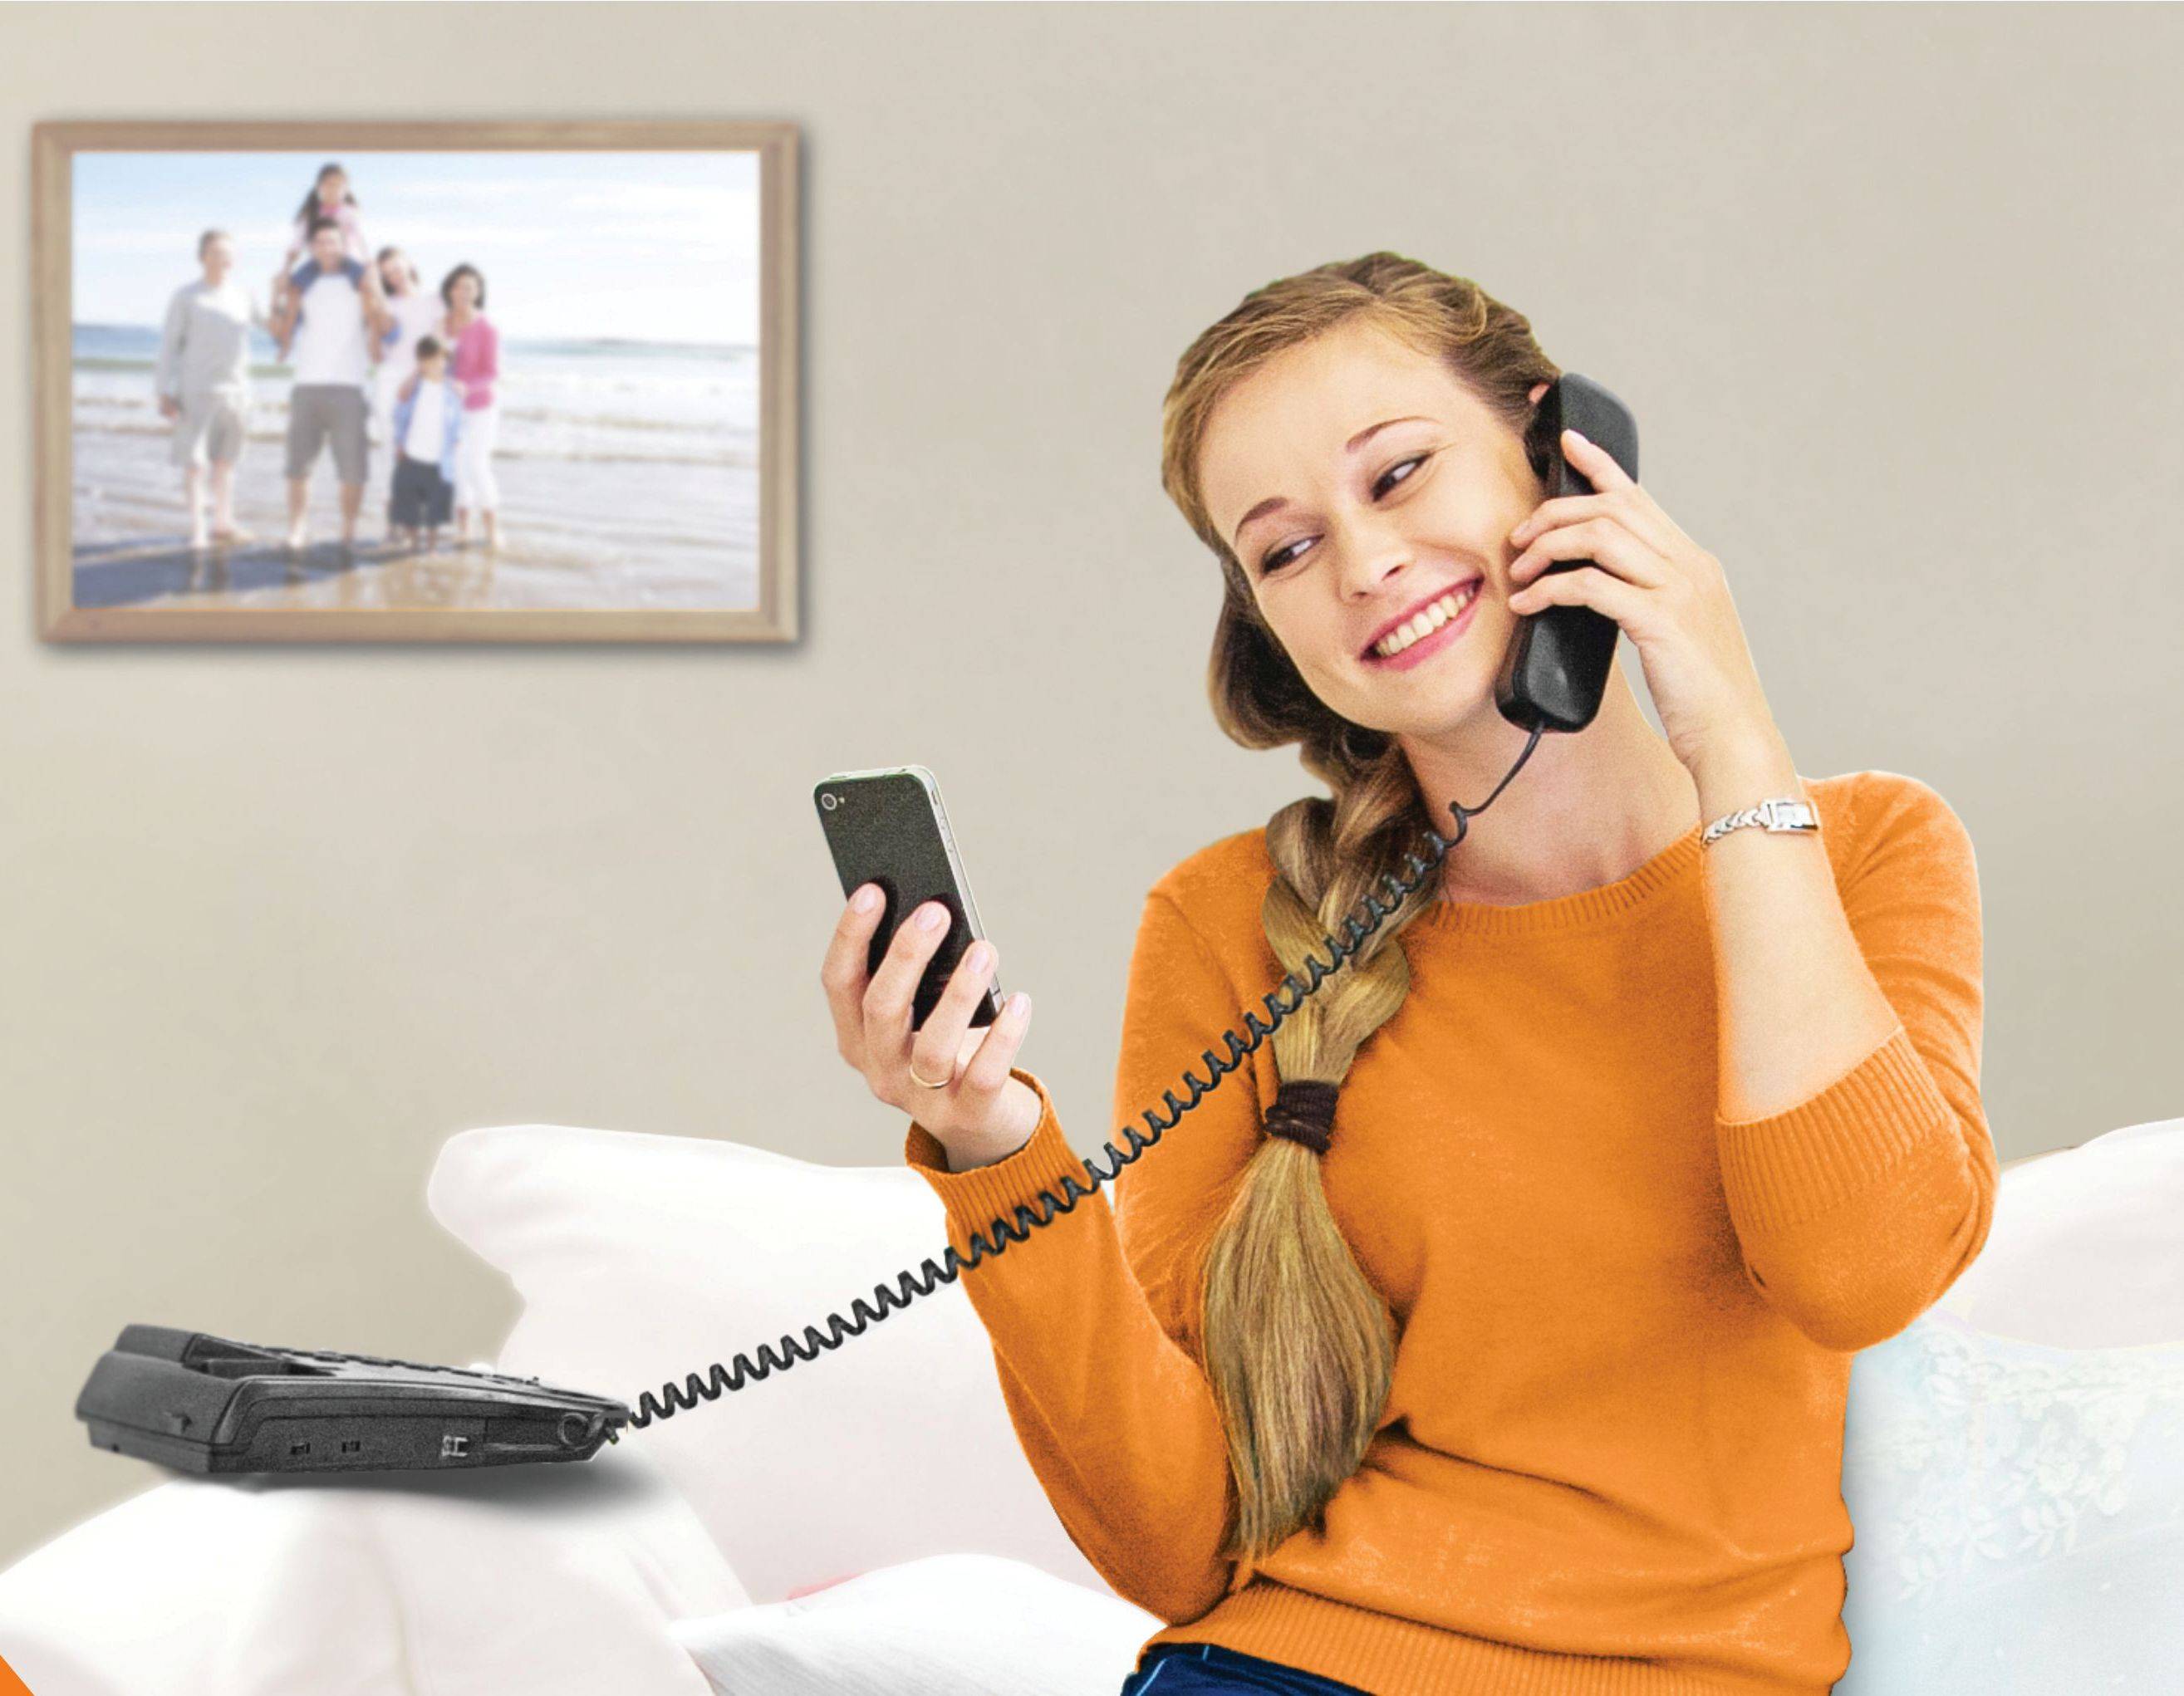 Как правильно разговаривать с клиентами по телефону. деловой этикет общения